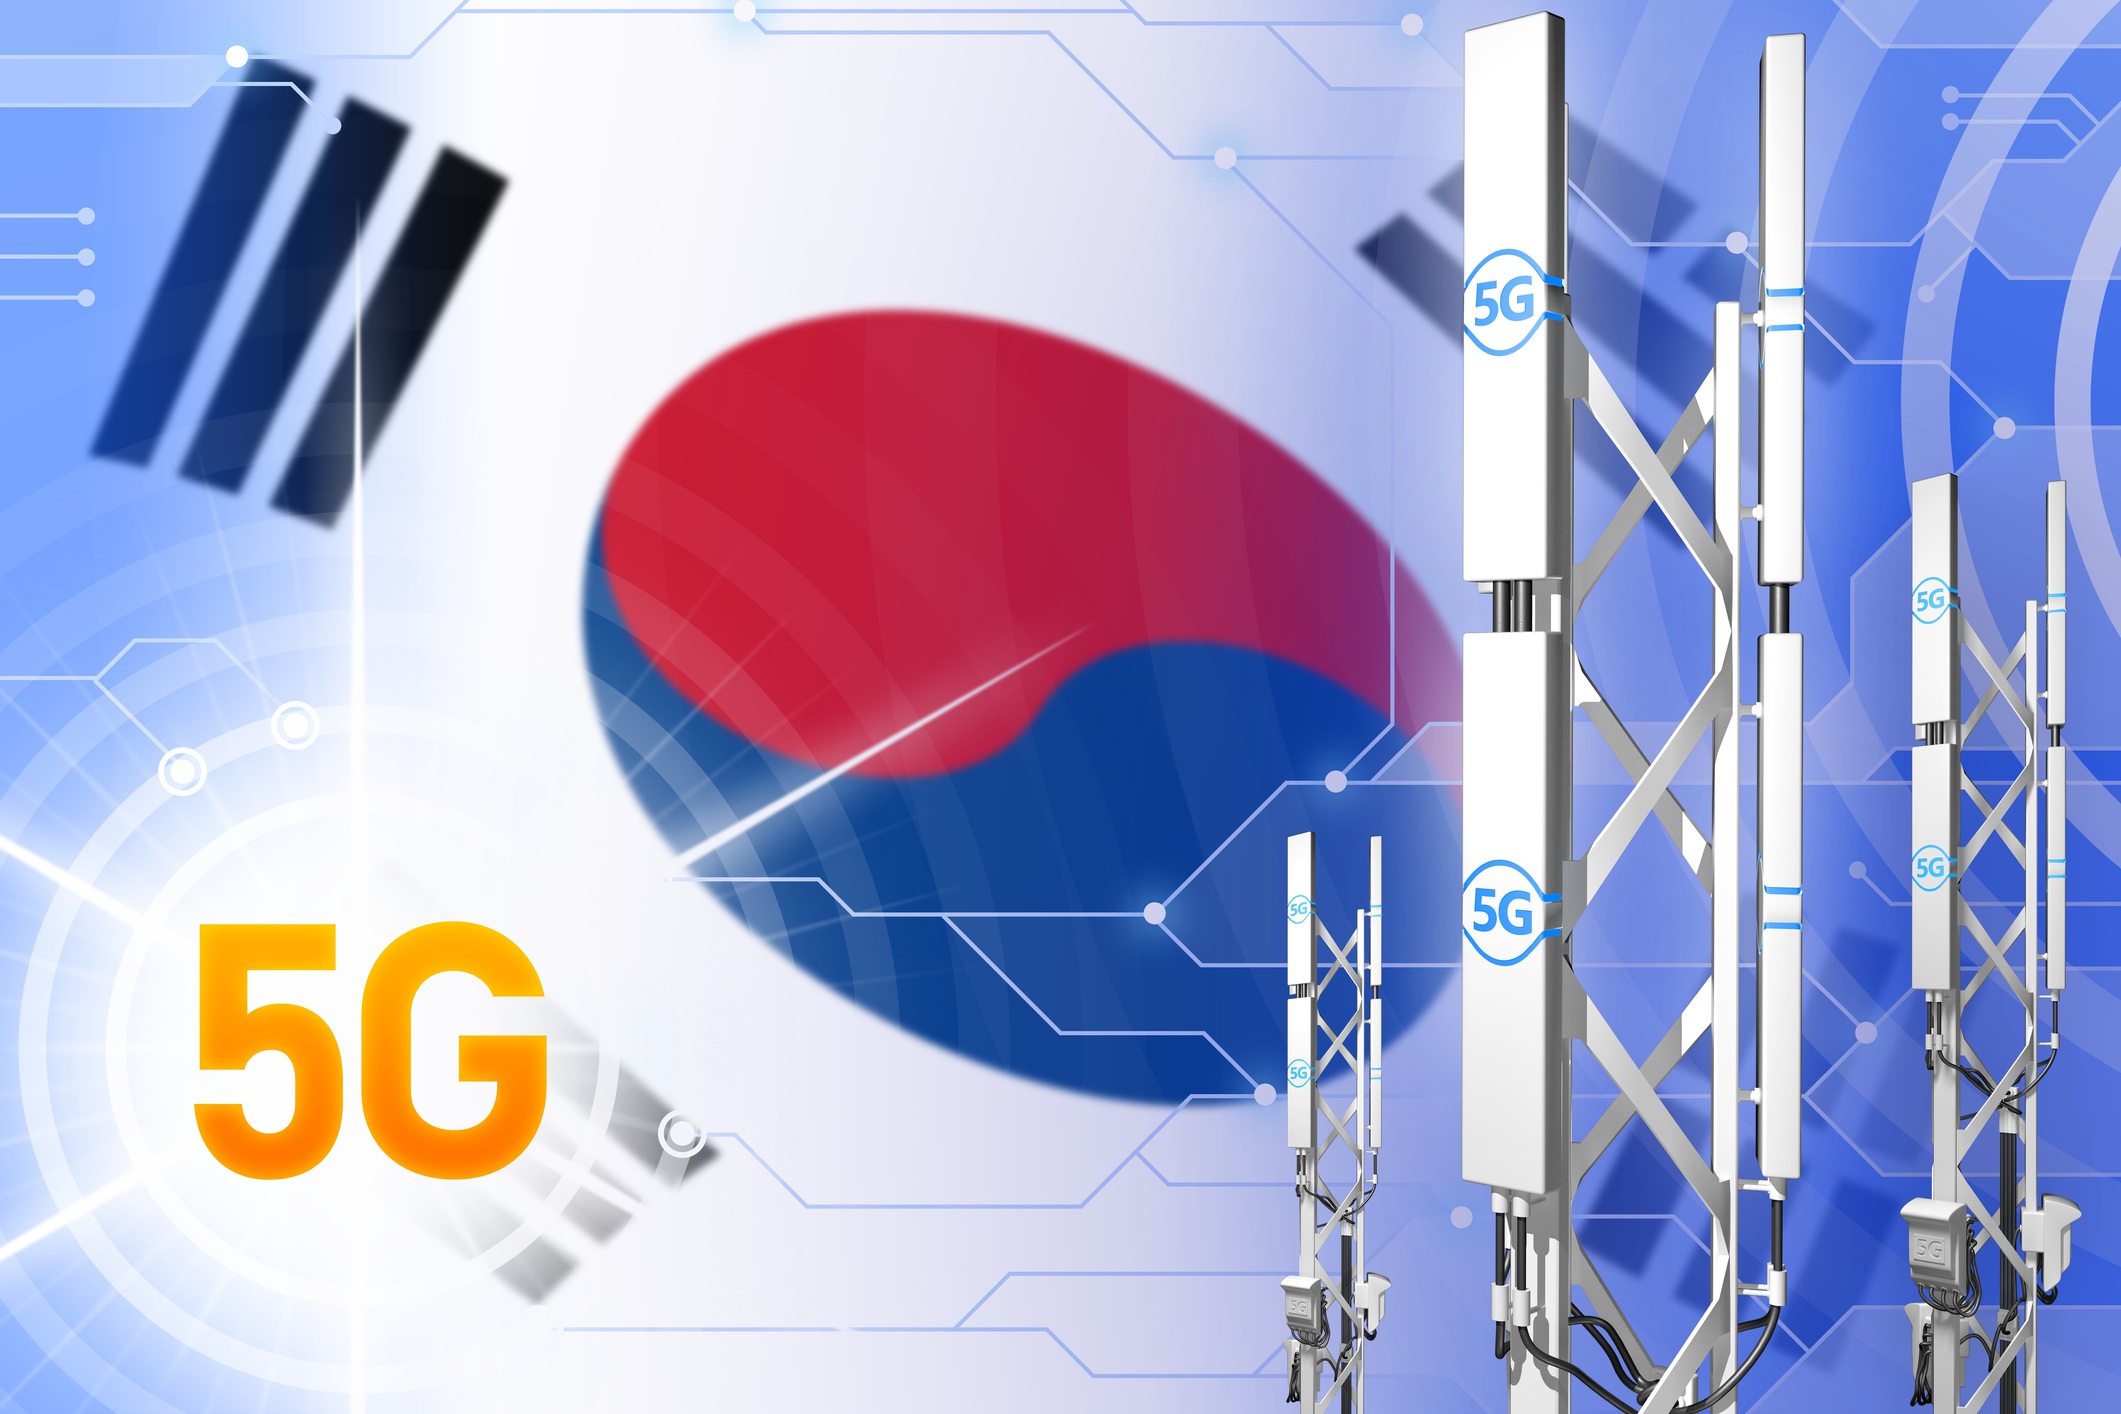 Hàn Quốc sẽ phủ sóng 5G tại 85 thành phố vào giữa năm 2022 - 2